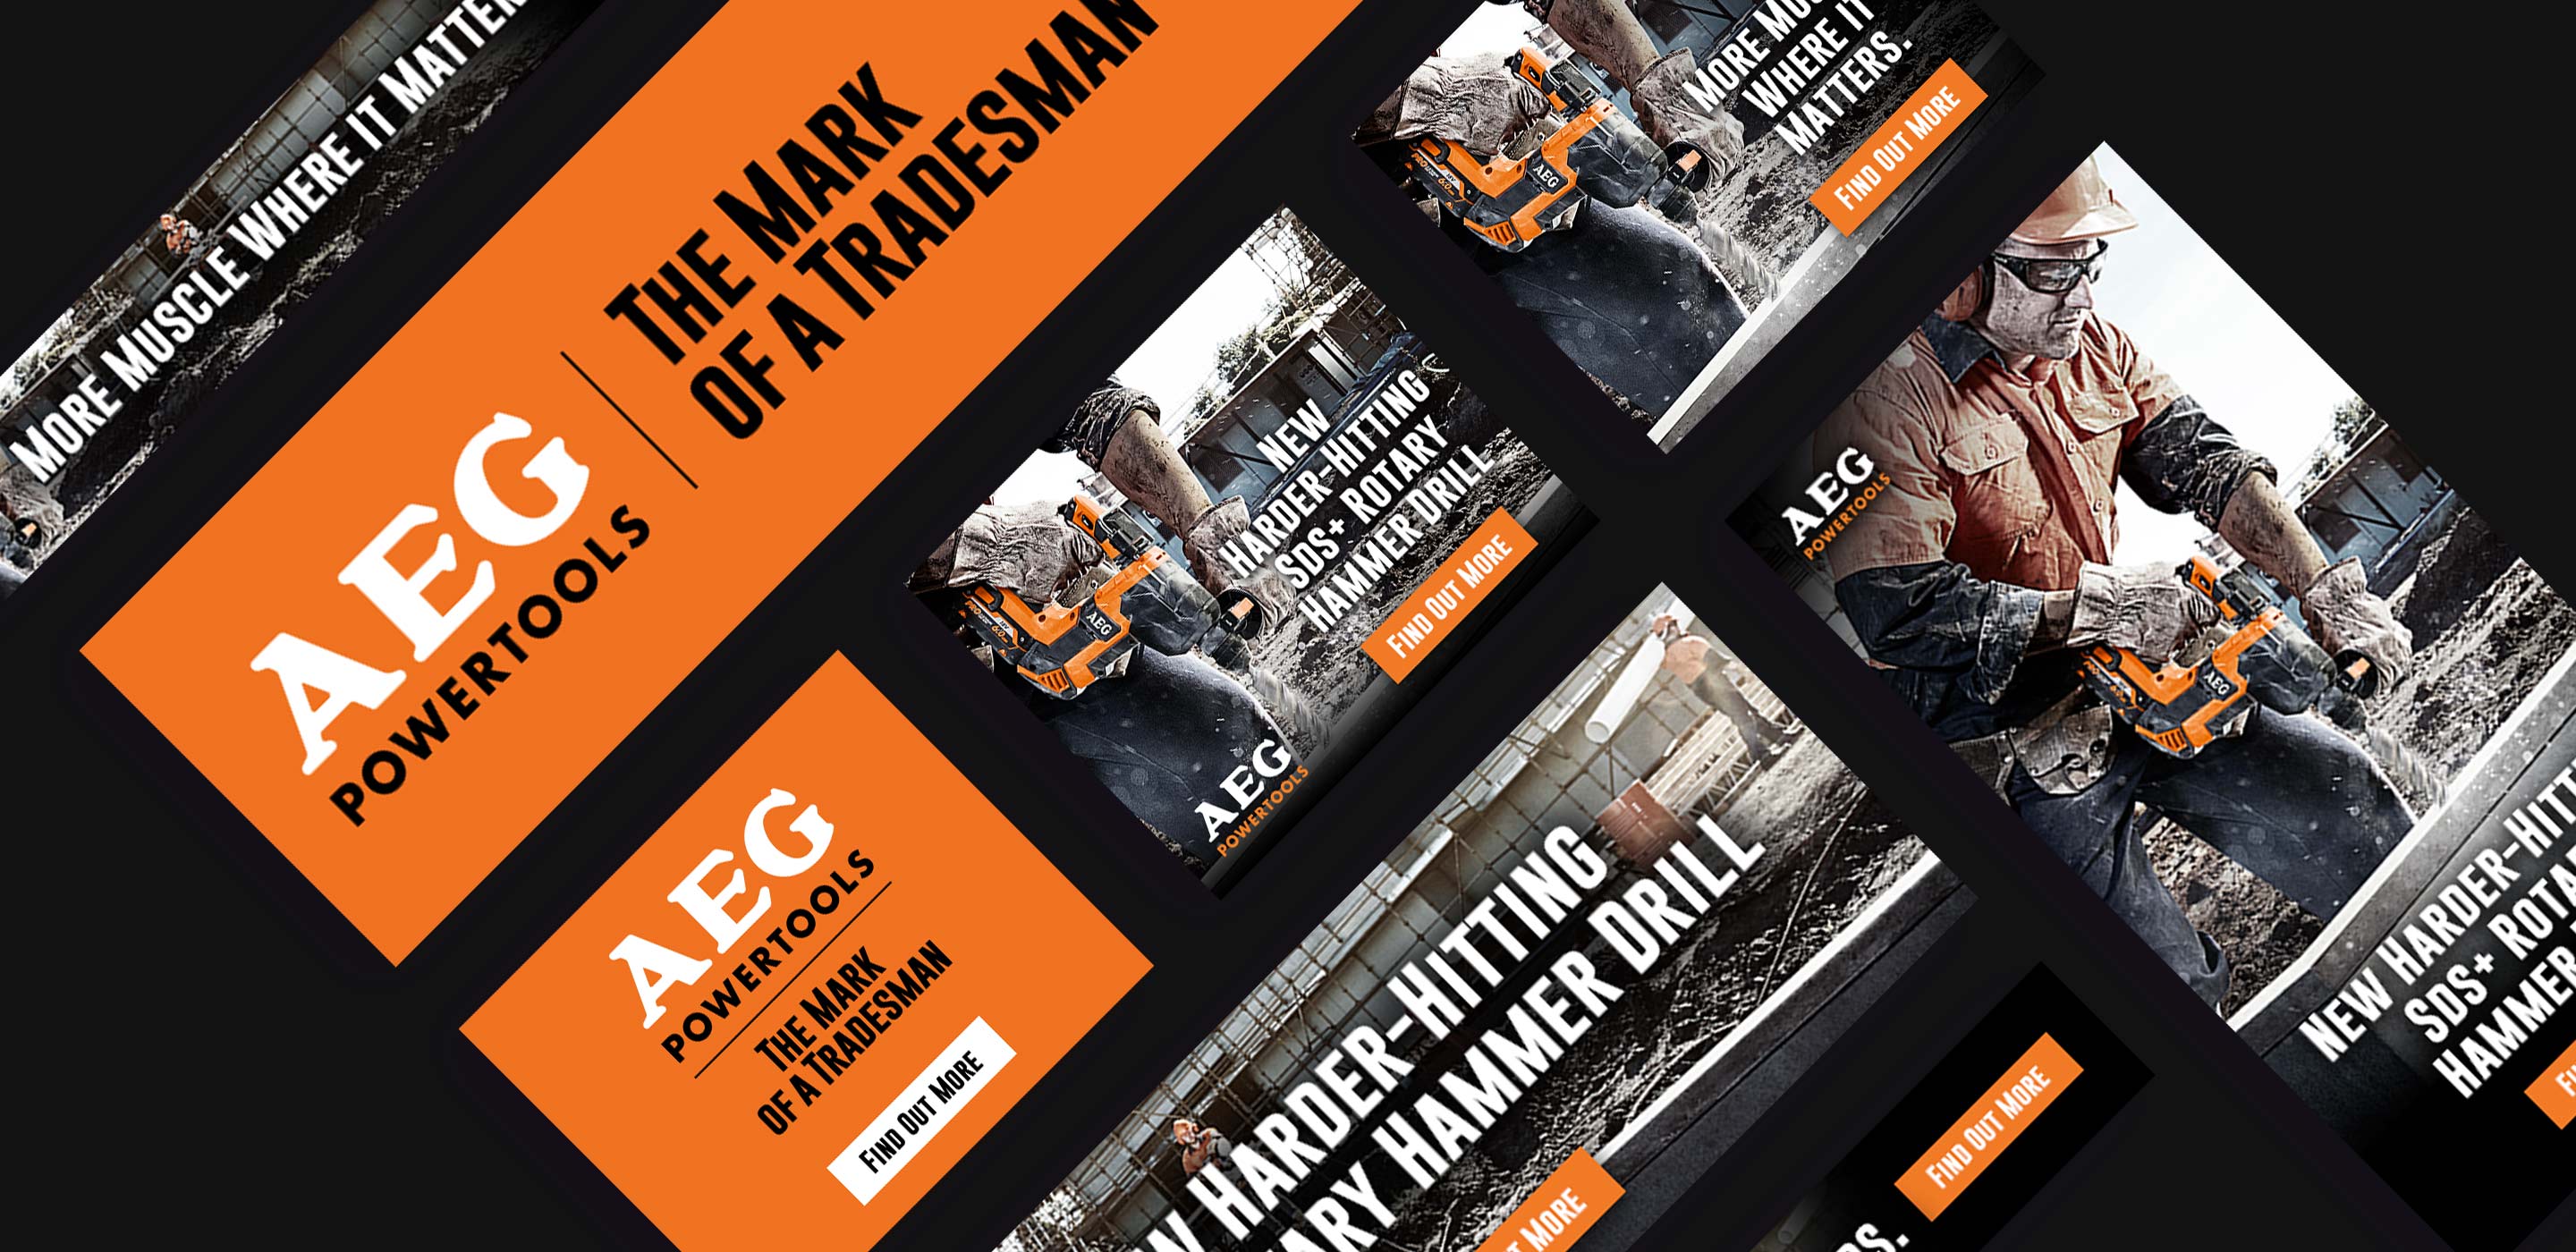 AEG hammer drill digital banners